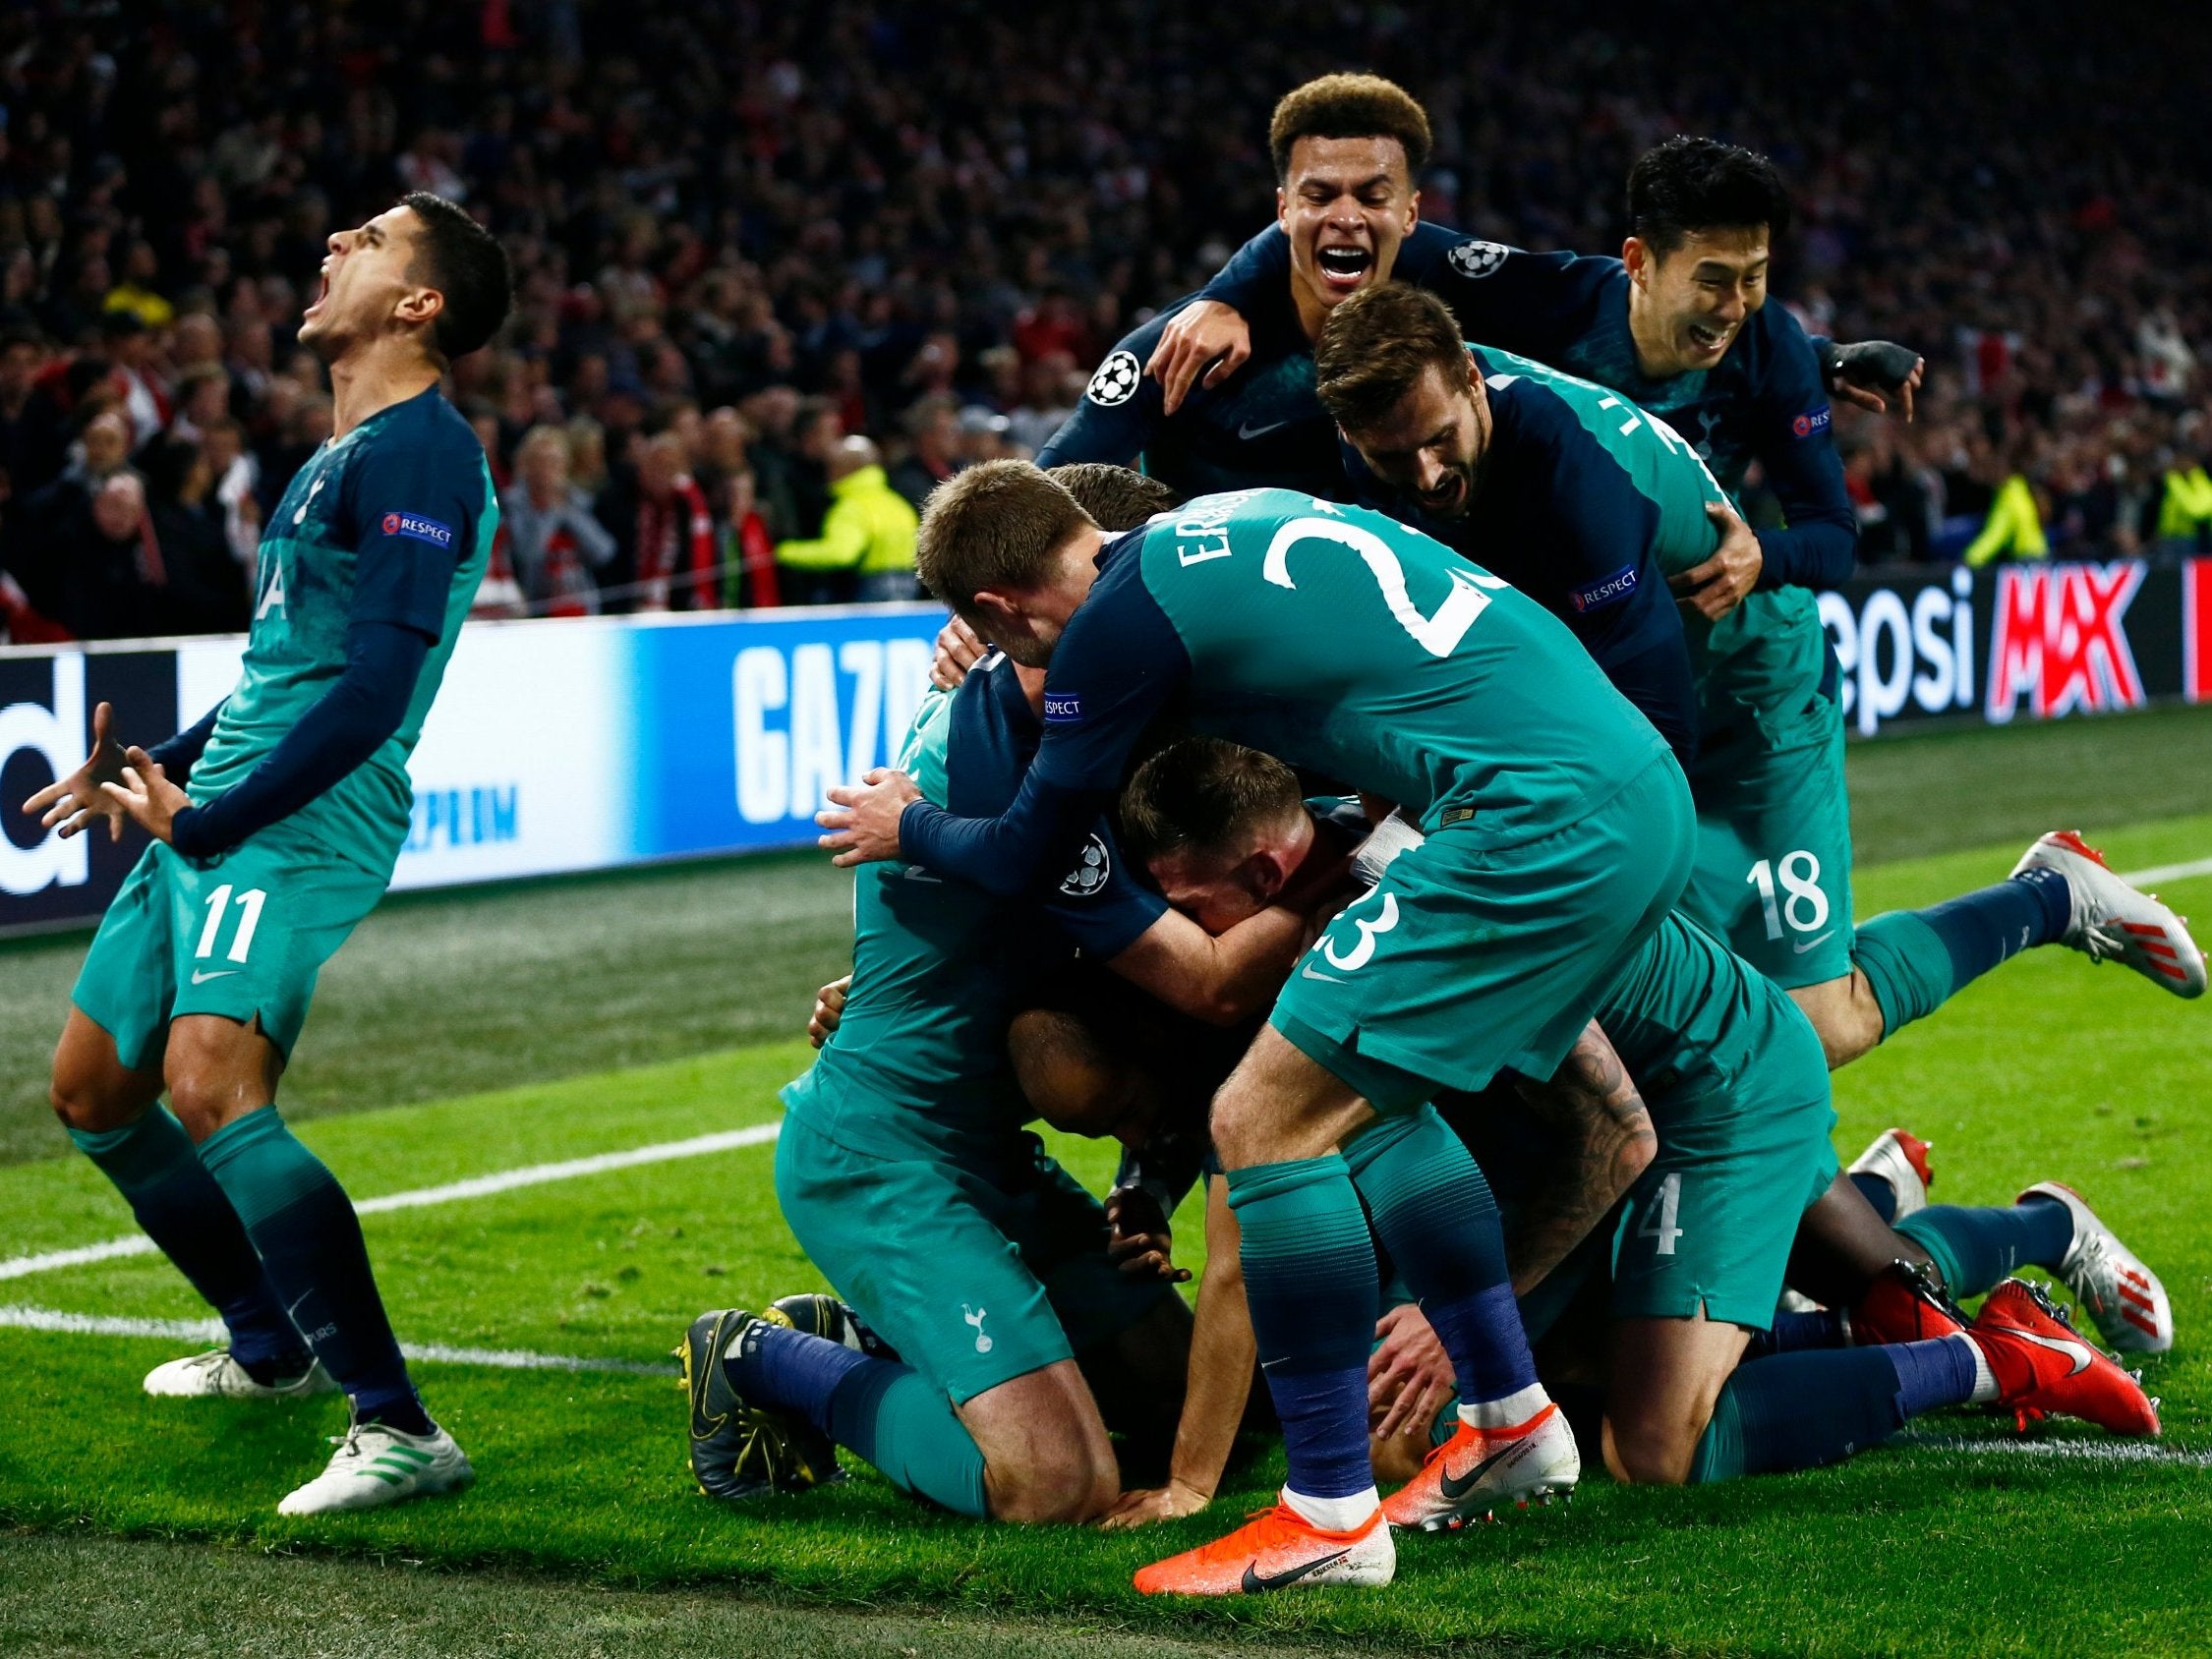 Ajax 2-3 Tottenham (3-3 Spurs win on away goals)